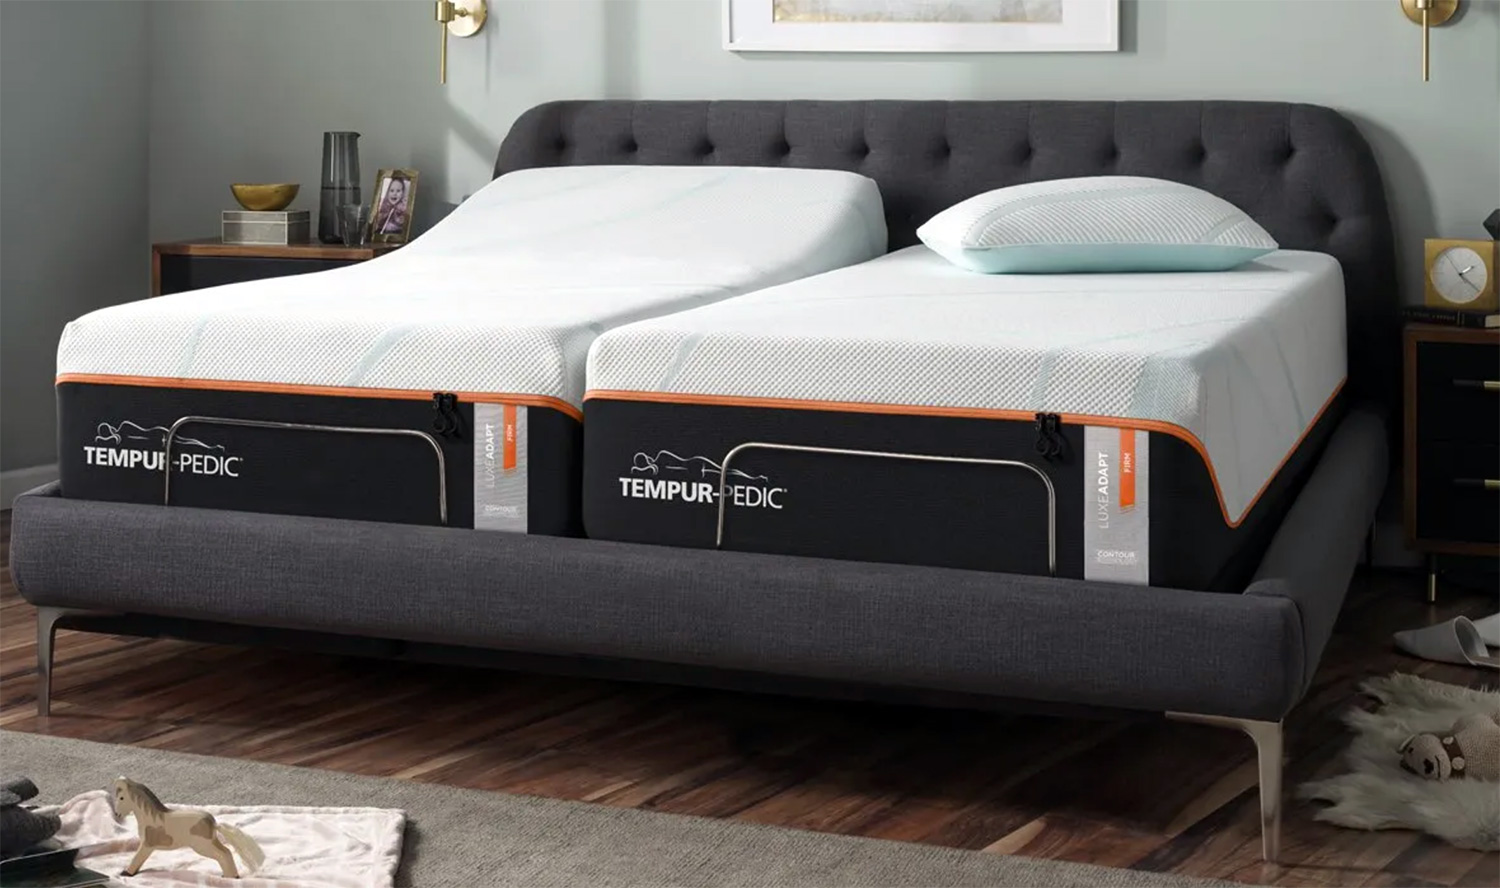 tempur-pedic cool tot cooling crib mattress pad